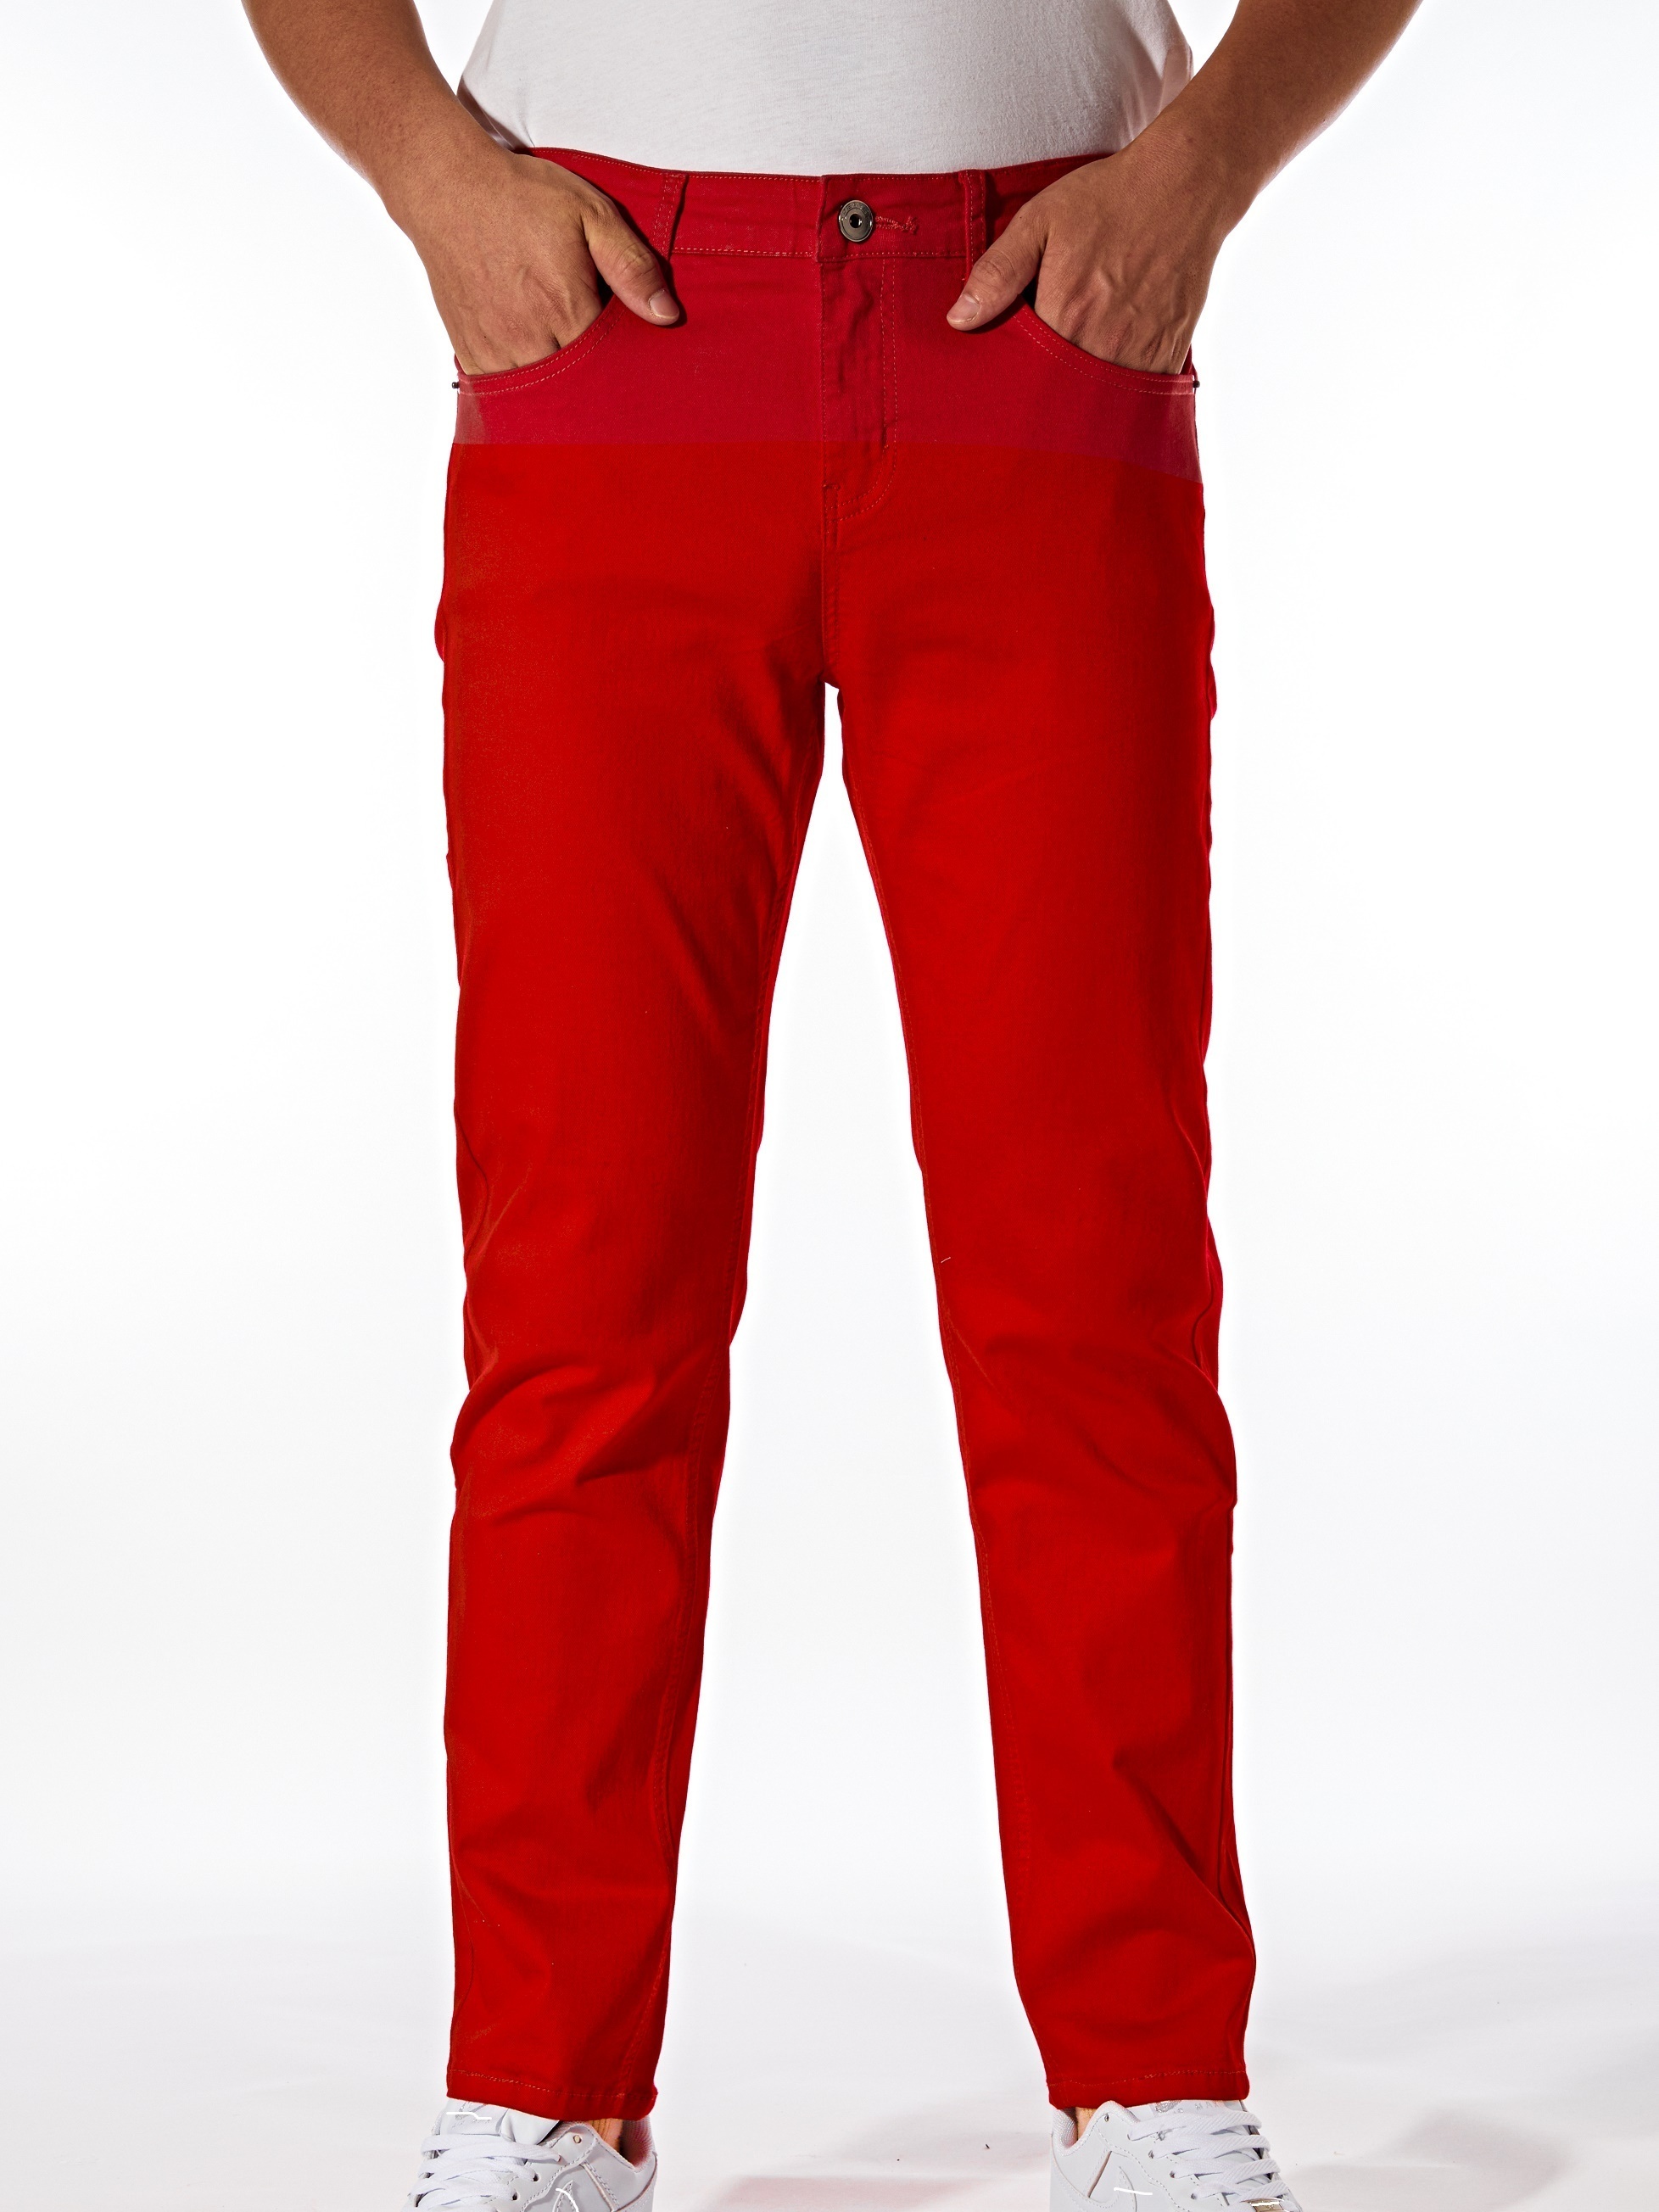 Las mejores ofertas en Pantalones rojos para hombres